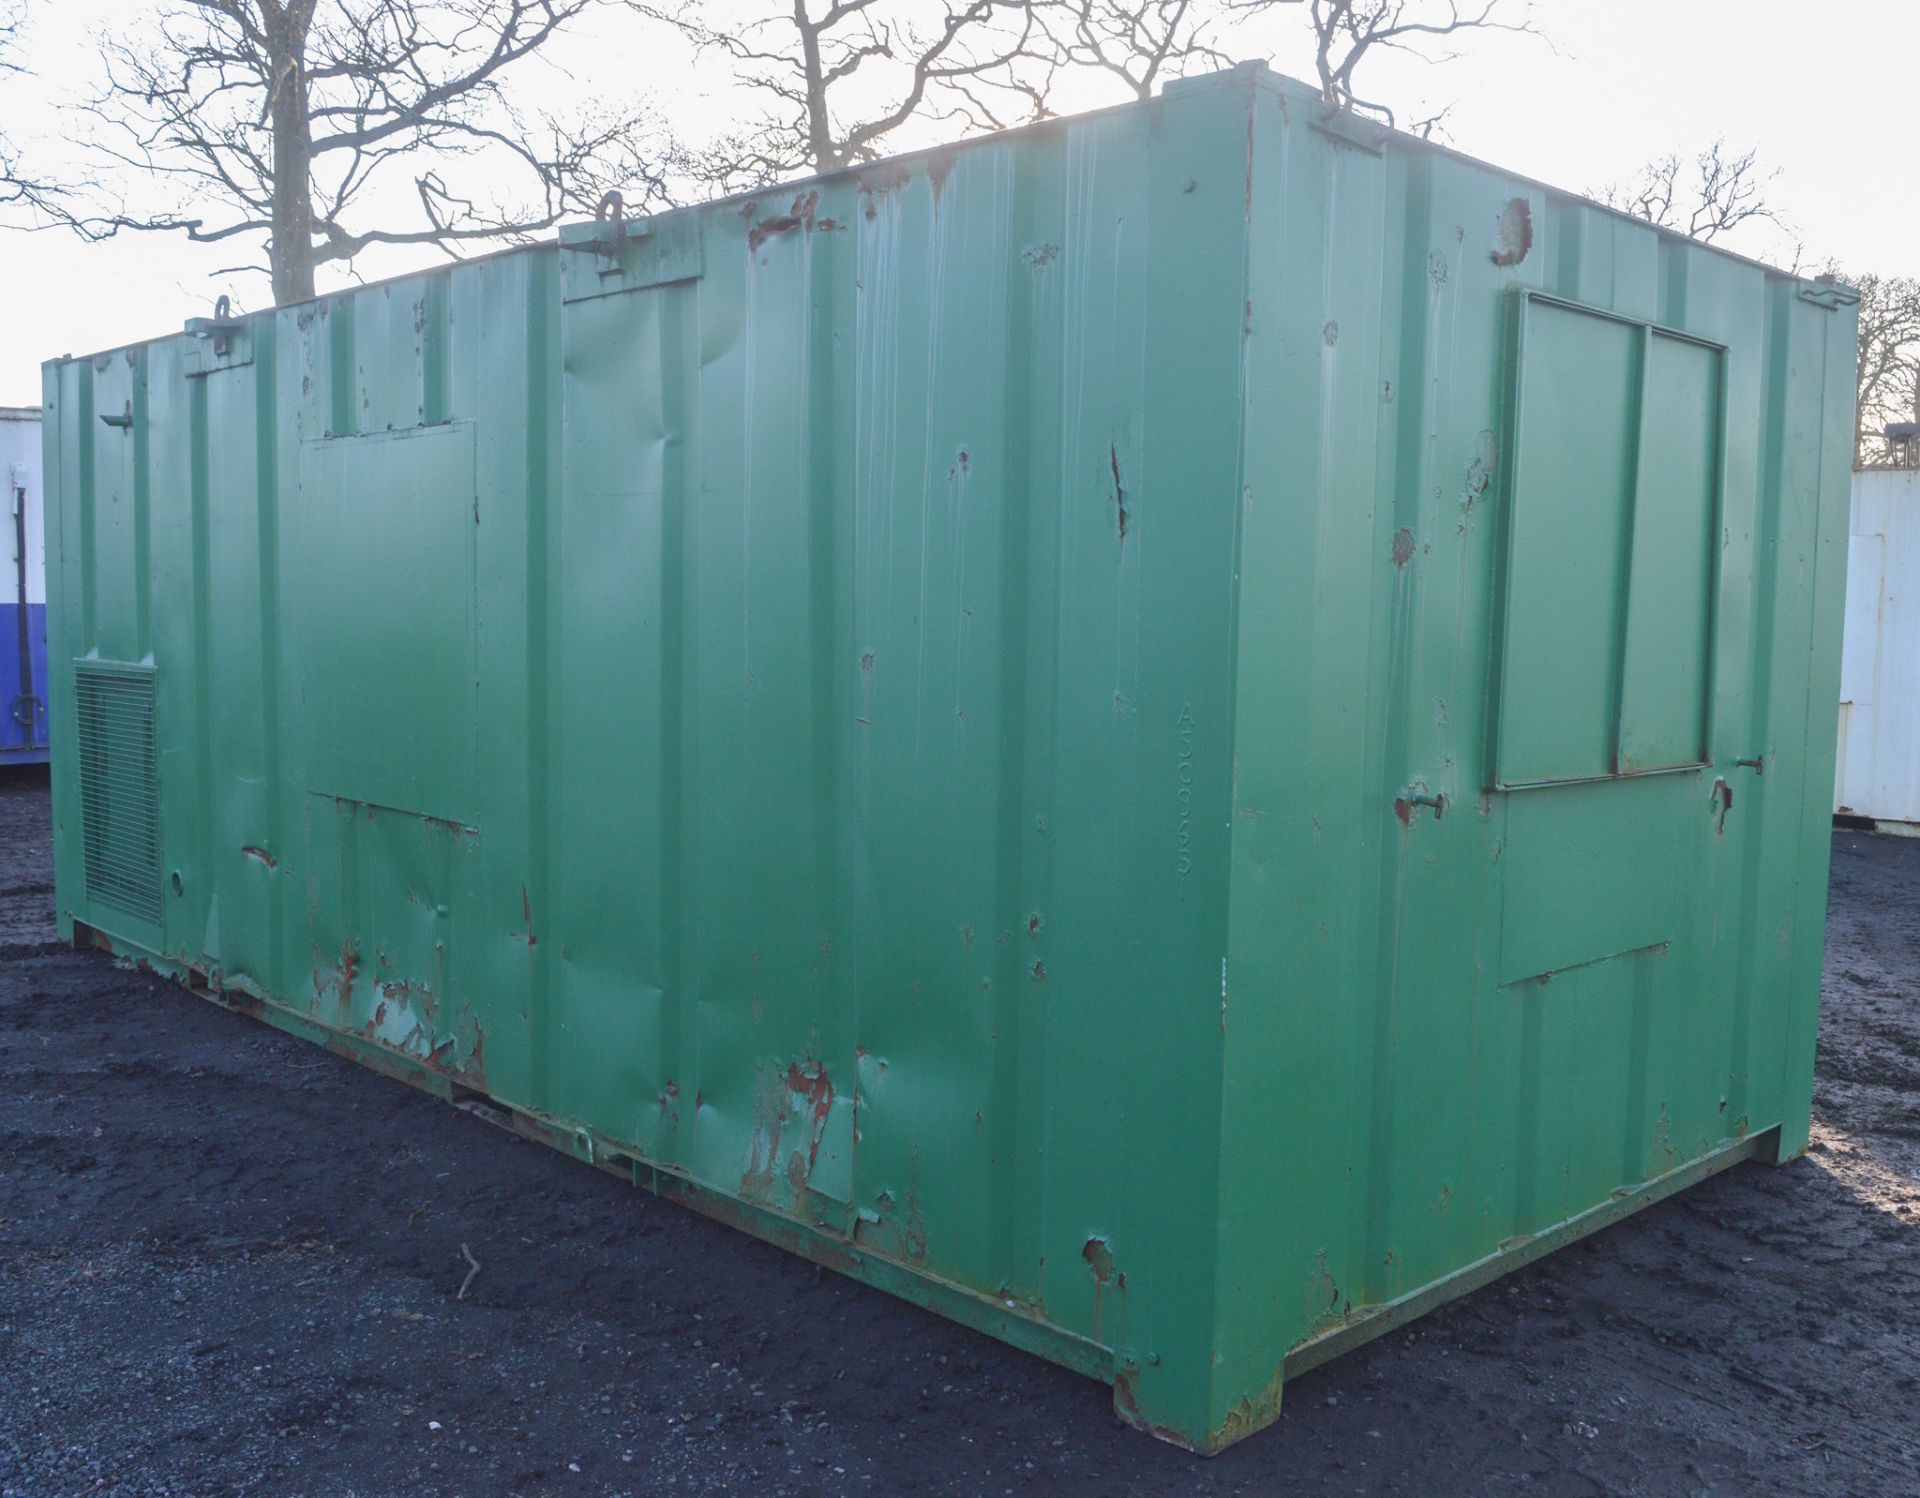 21 ft x 9 ft steel anti vandal welfare unit  c/w diesel generator & keys in office  A509651 - Bild 3 aus 9